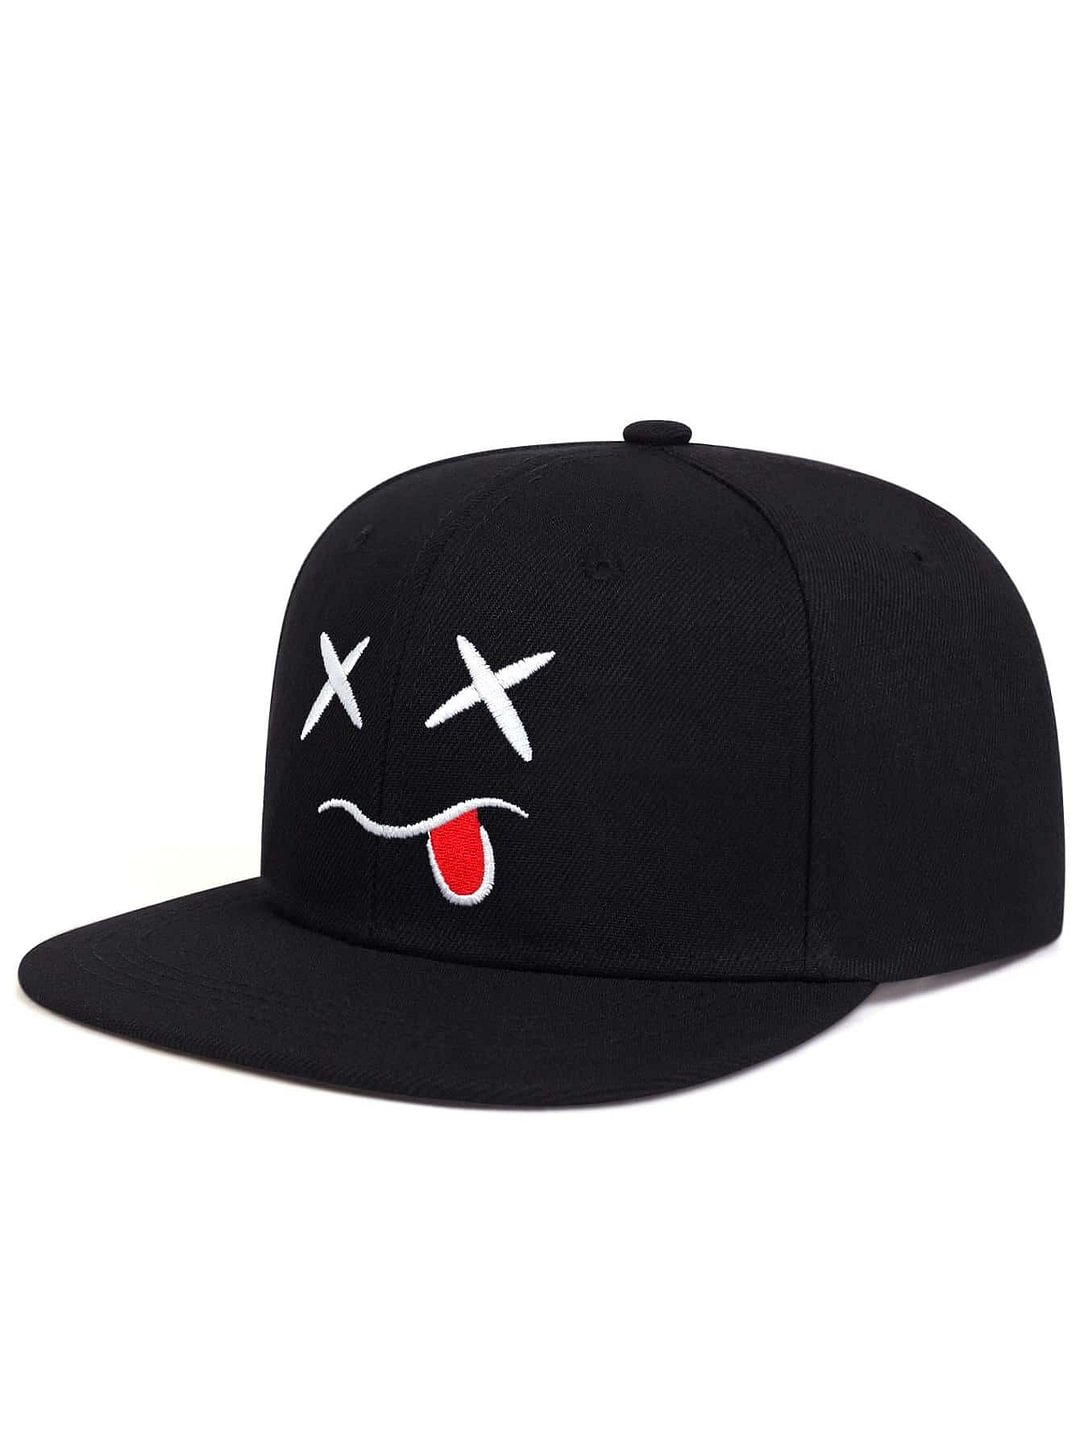 Naughty Emoji Graphic Fashion Cap